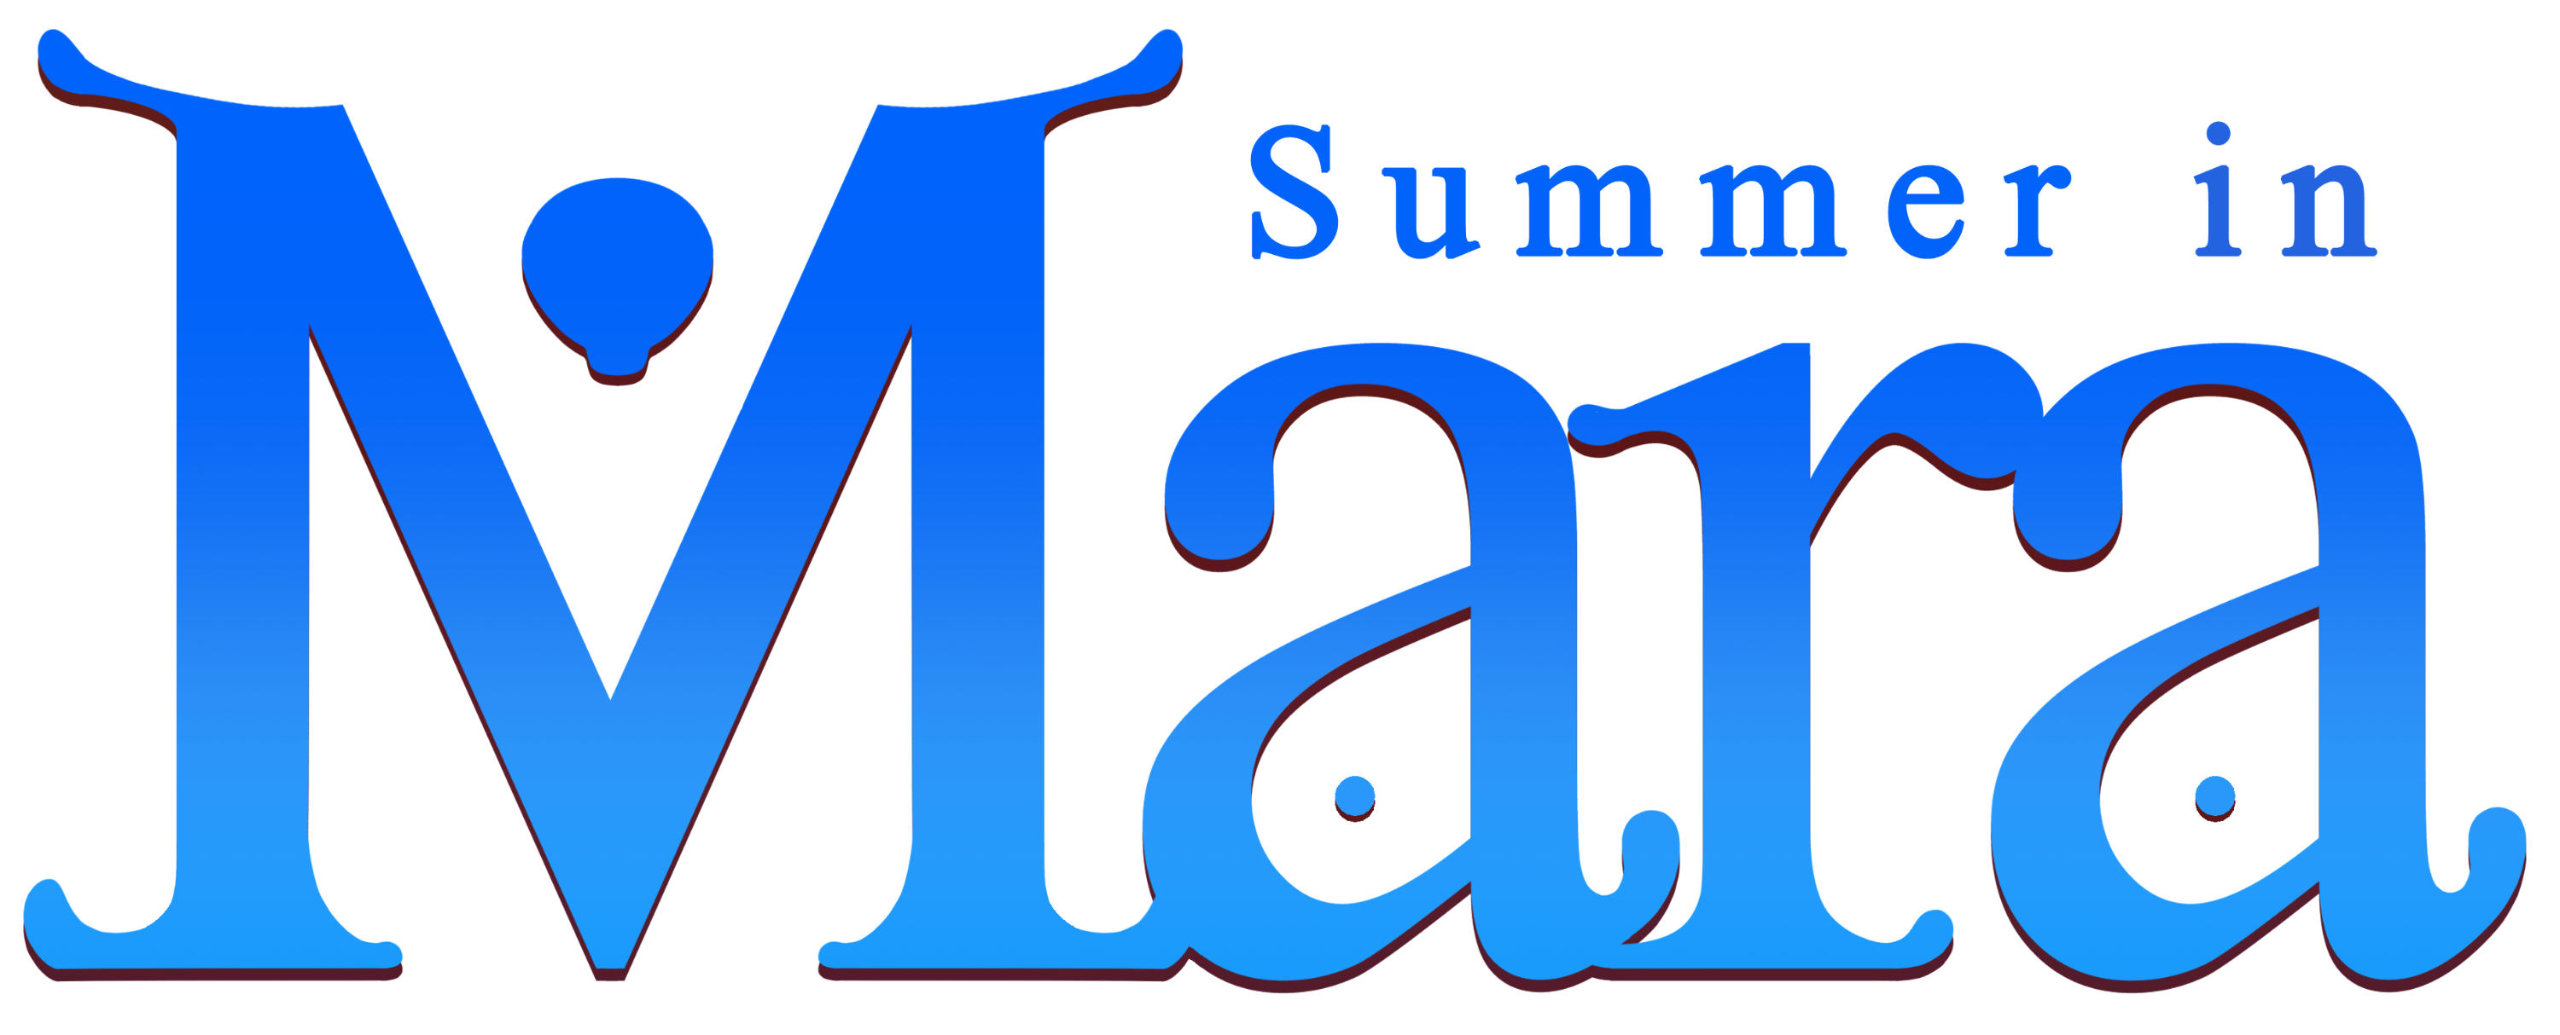 Summer in Mara Logo